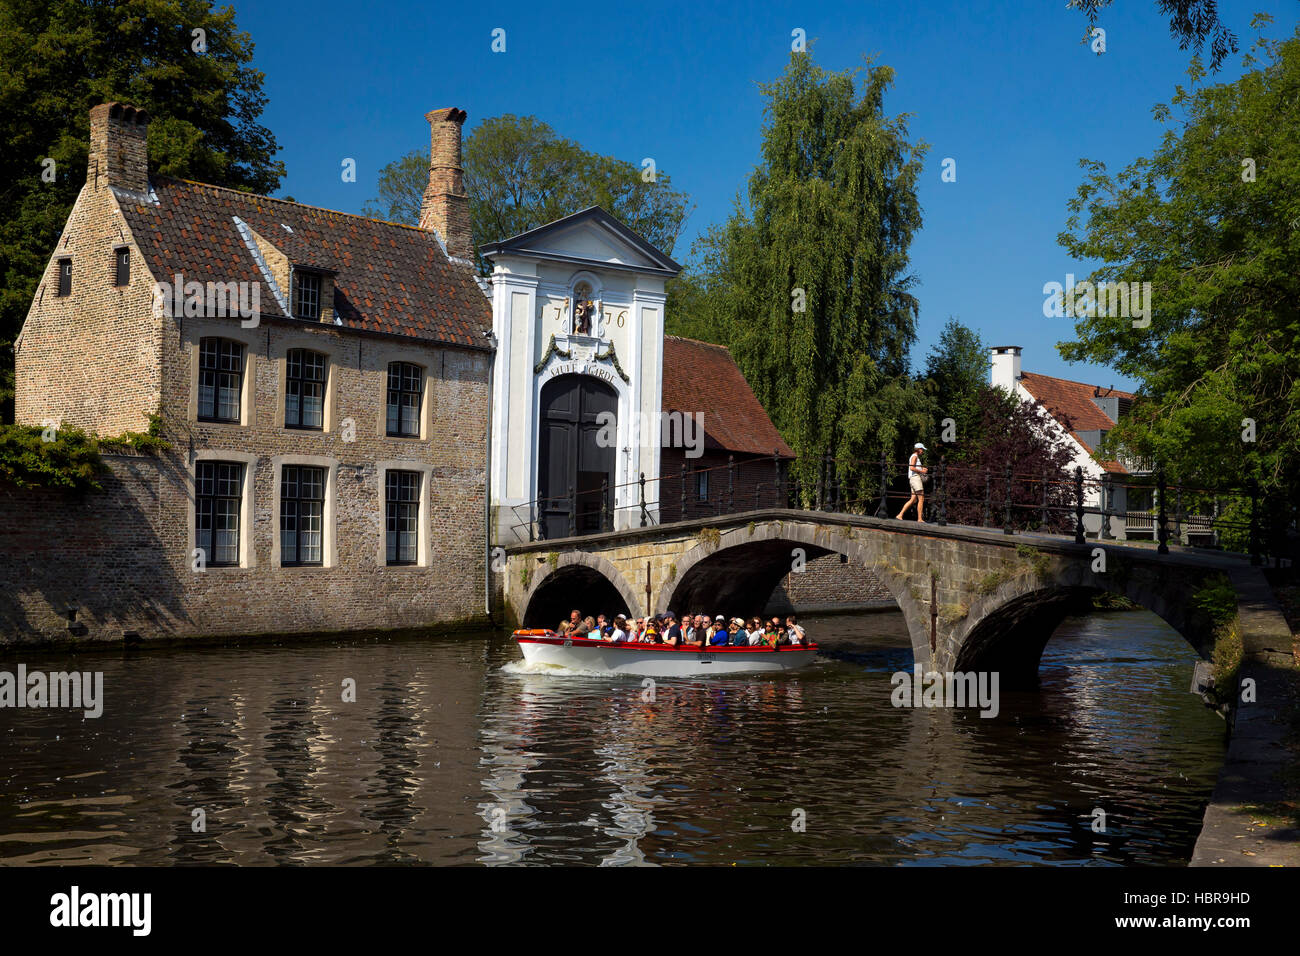 Imbarcazione turistica presso il lago Minnewater e Begijnhof ponte con ingresso al beghinaggio di Bruges, Belgio, Europa Foto Stock